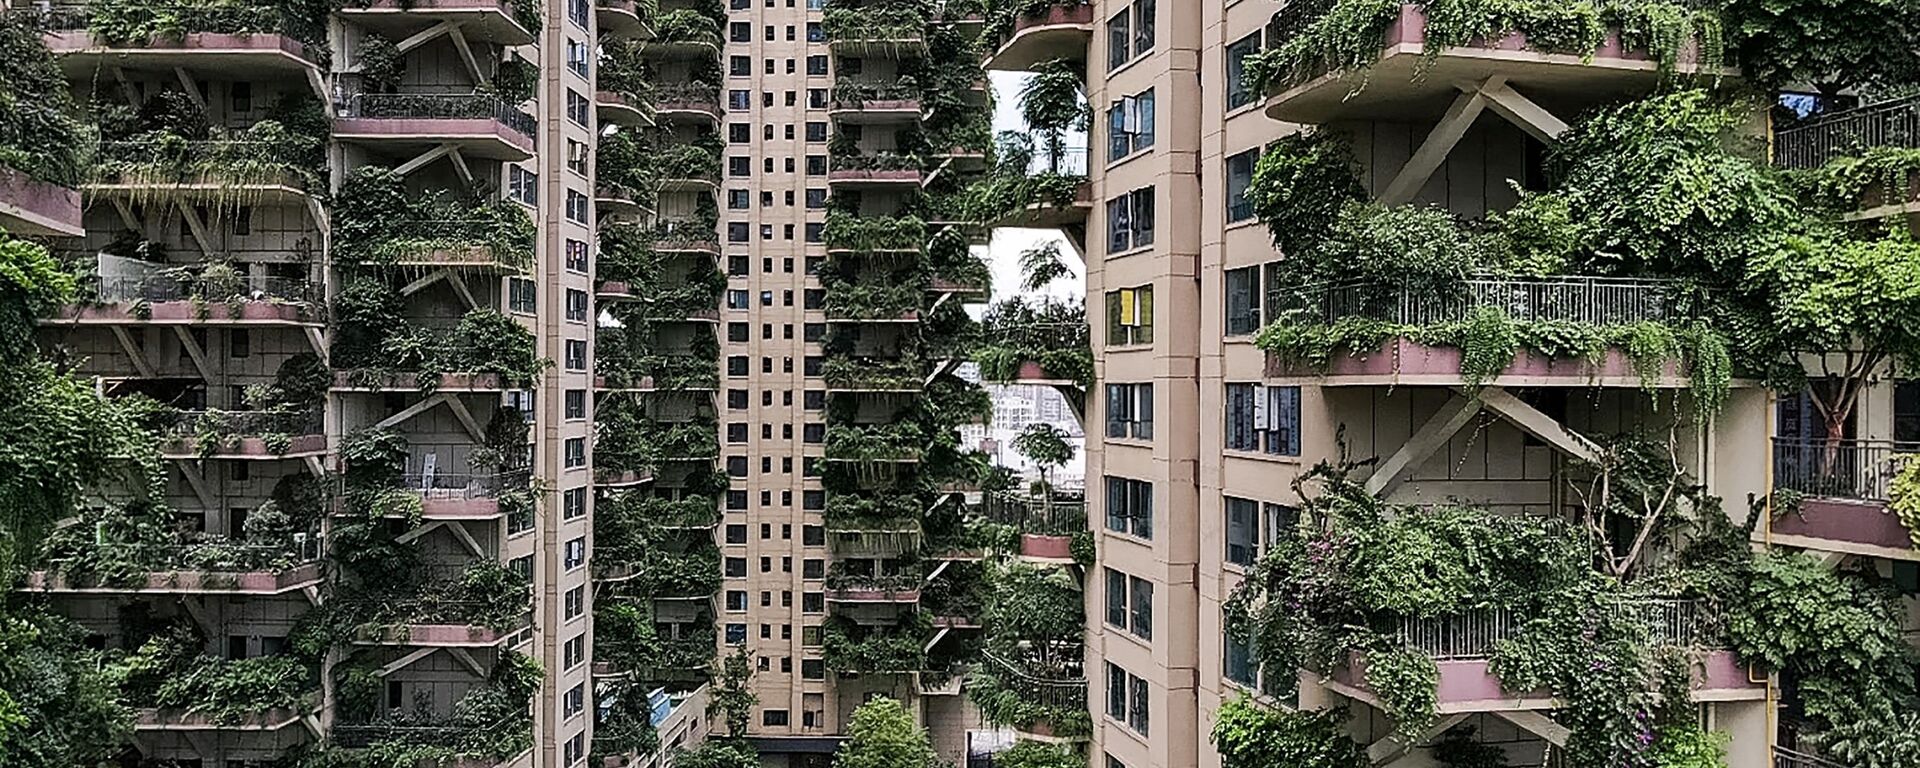 Quang cảnh những tòa nhà chọc trời sinh thái cây cối mọc um tùm ở thành phố Thành Đô, Trung Quốc - Sputnik Việt Nam, 1920, 16.09.2020